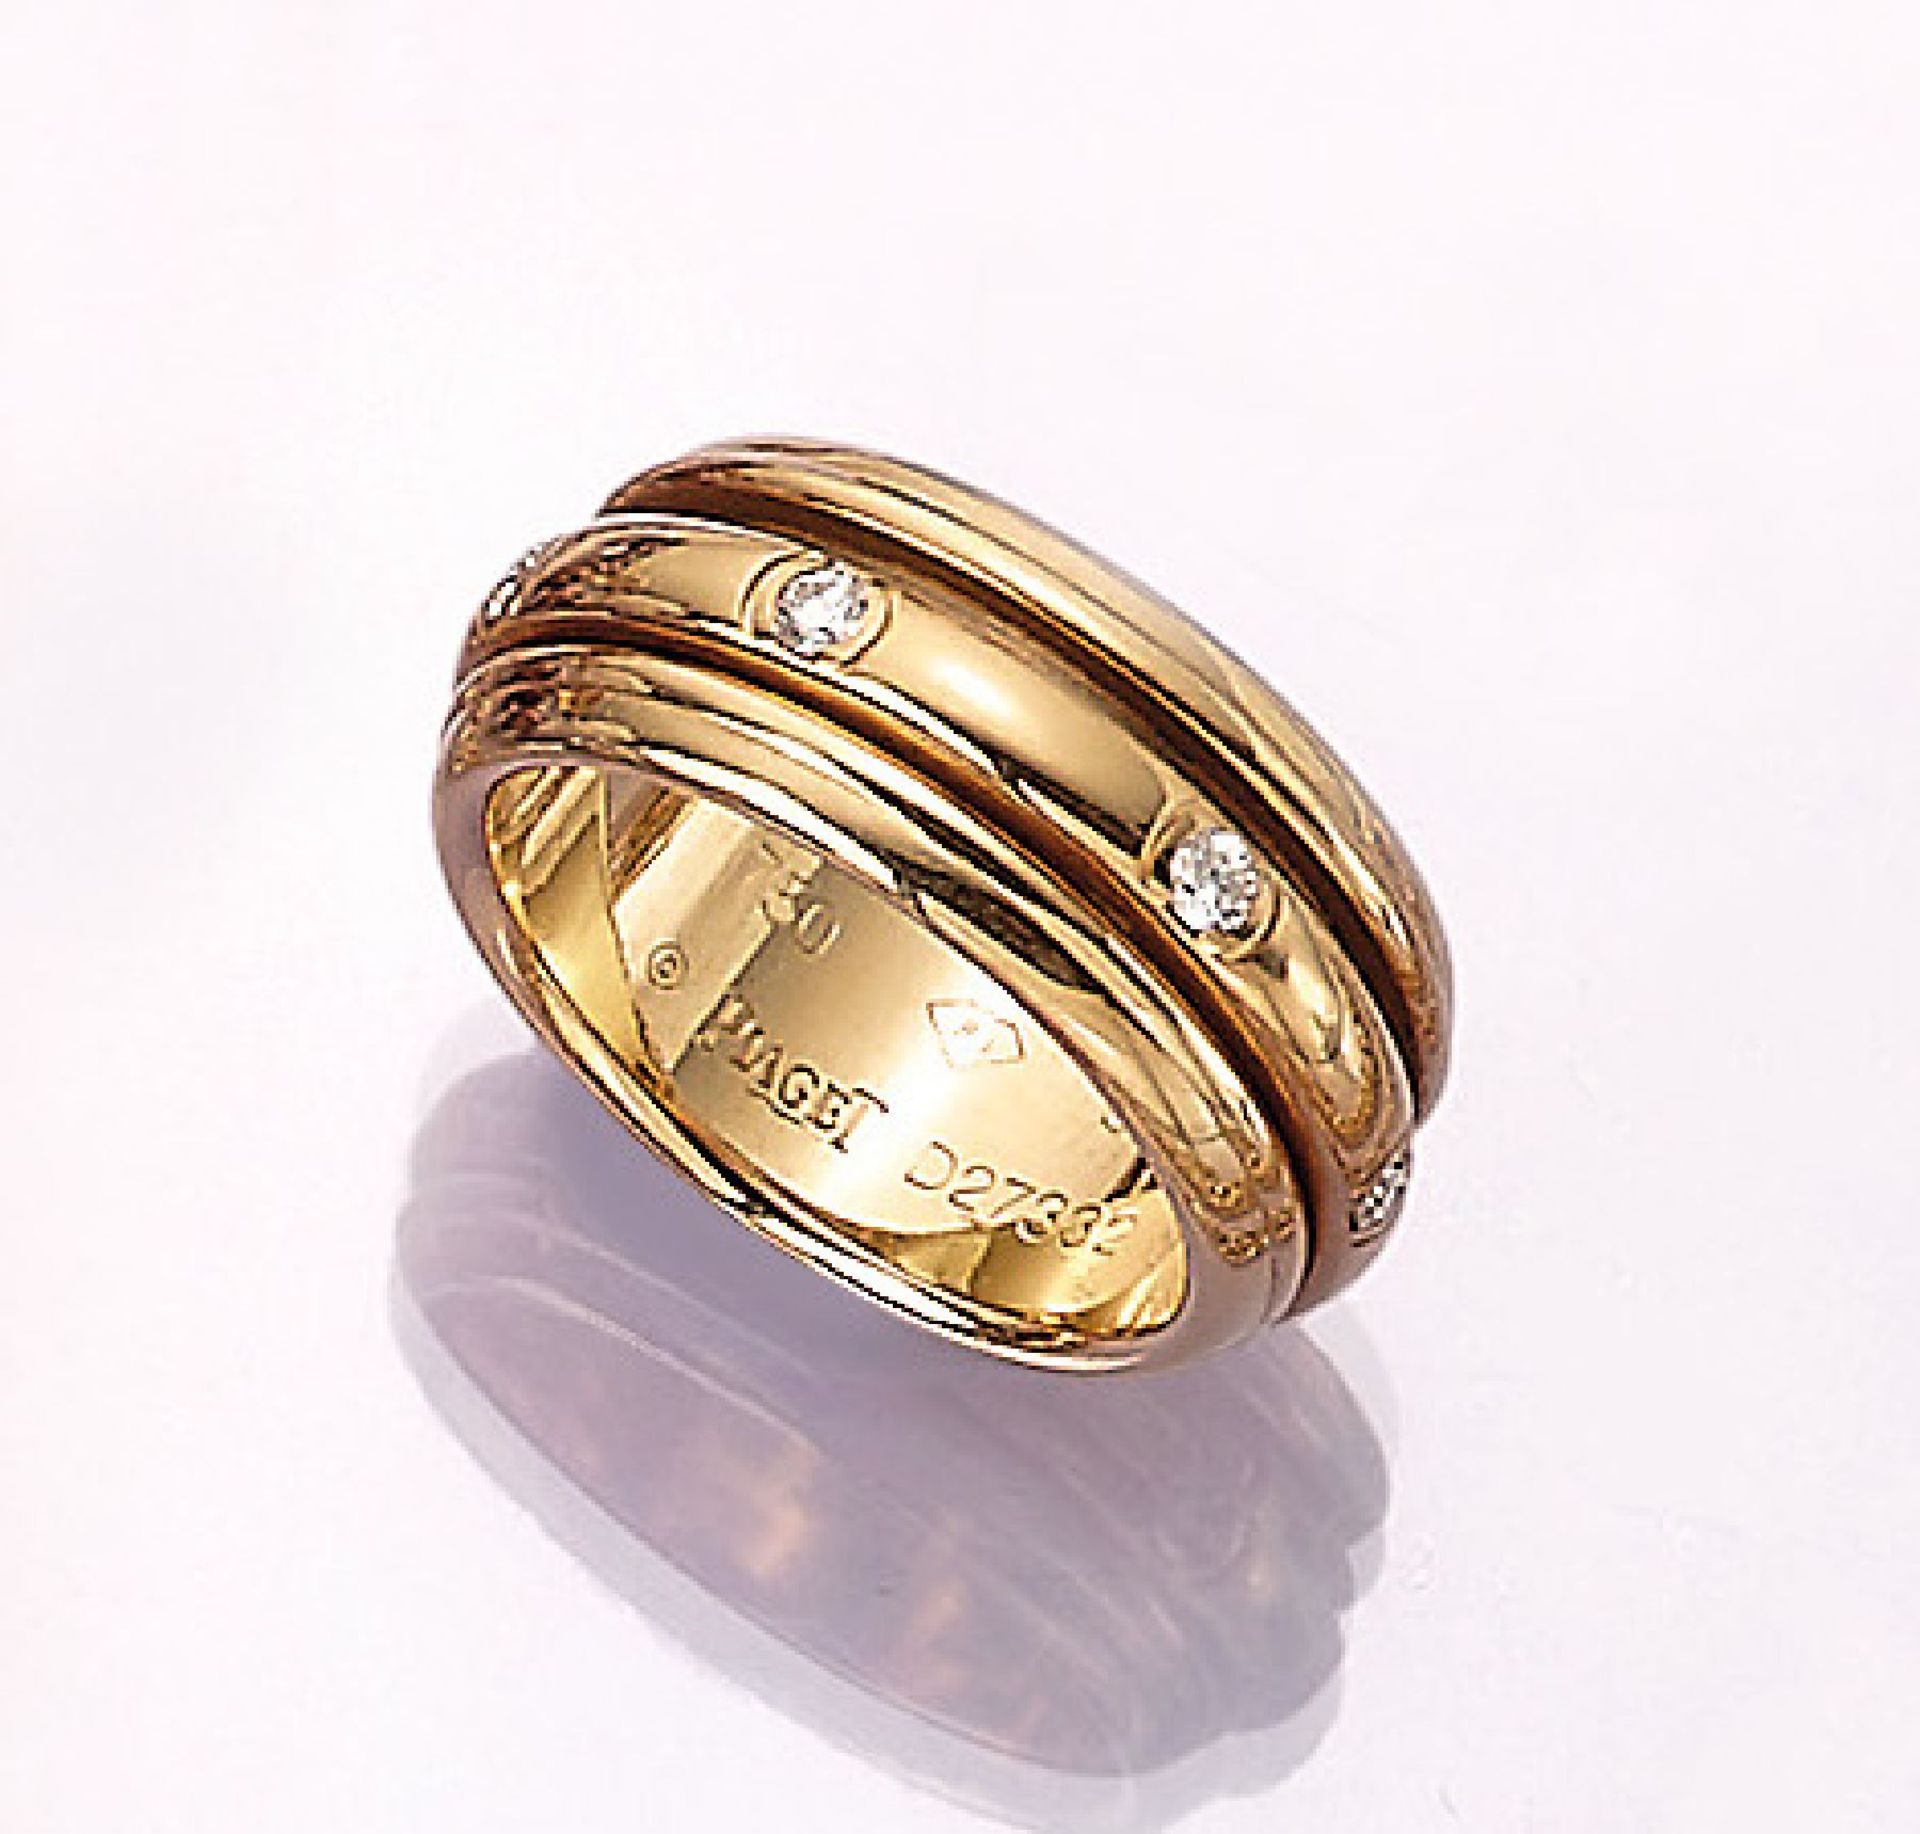 18 kt Gold PIAGET Ring mit Brillanten, GG 750/000, Brillanten zus. ca. 0.35 ct feines Weiß-Weiß/